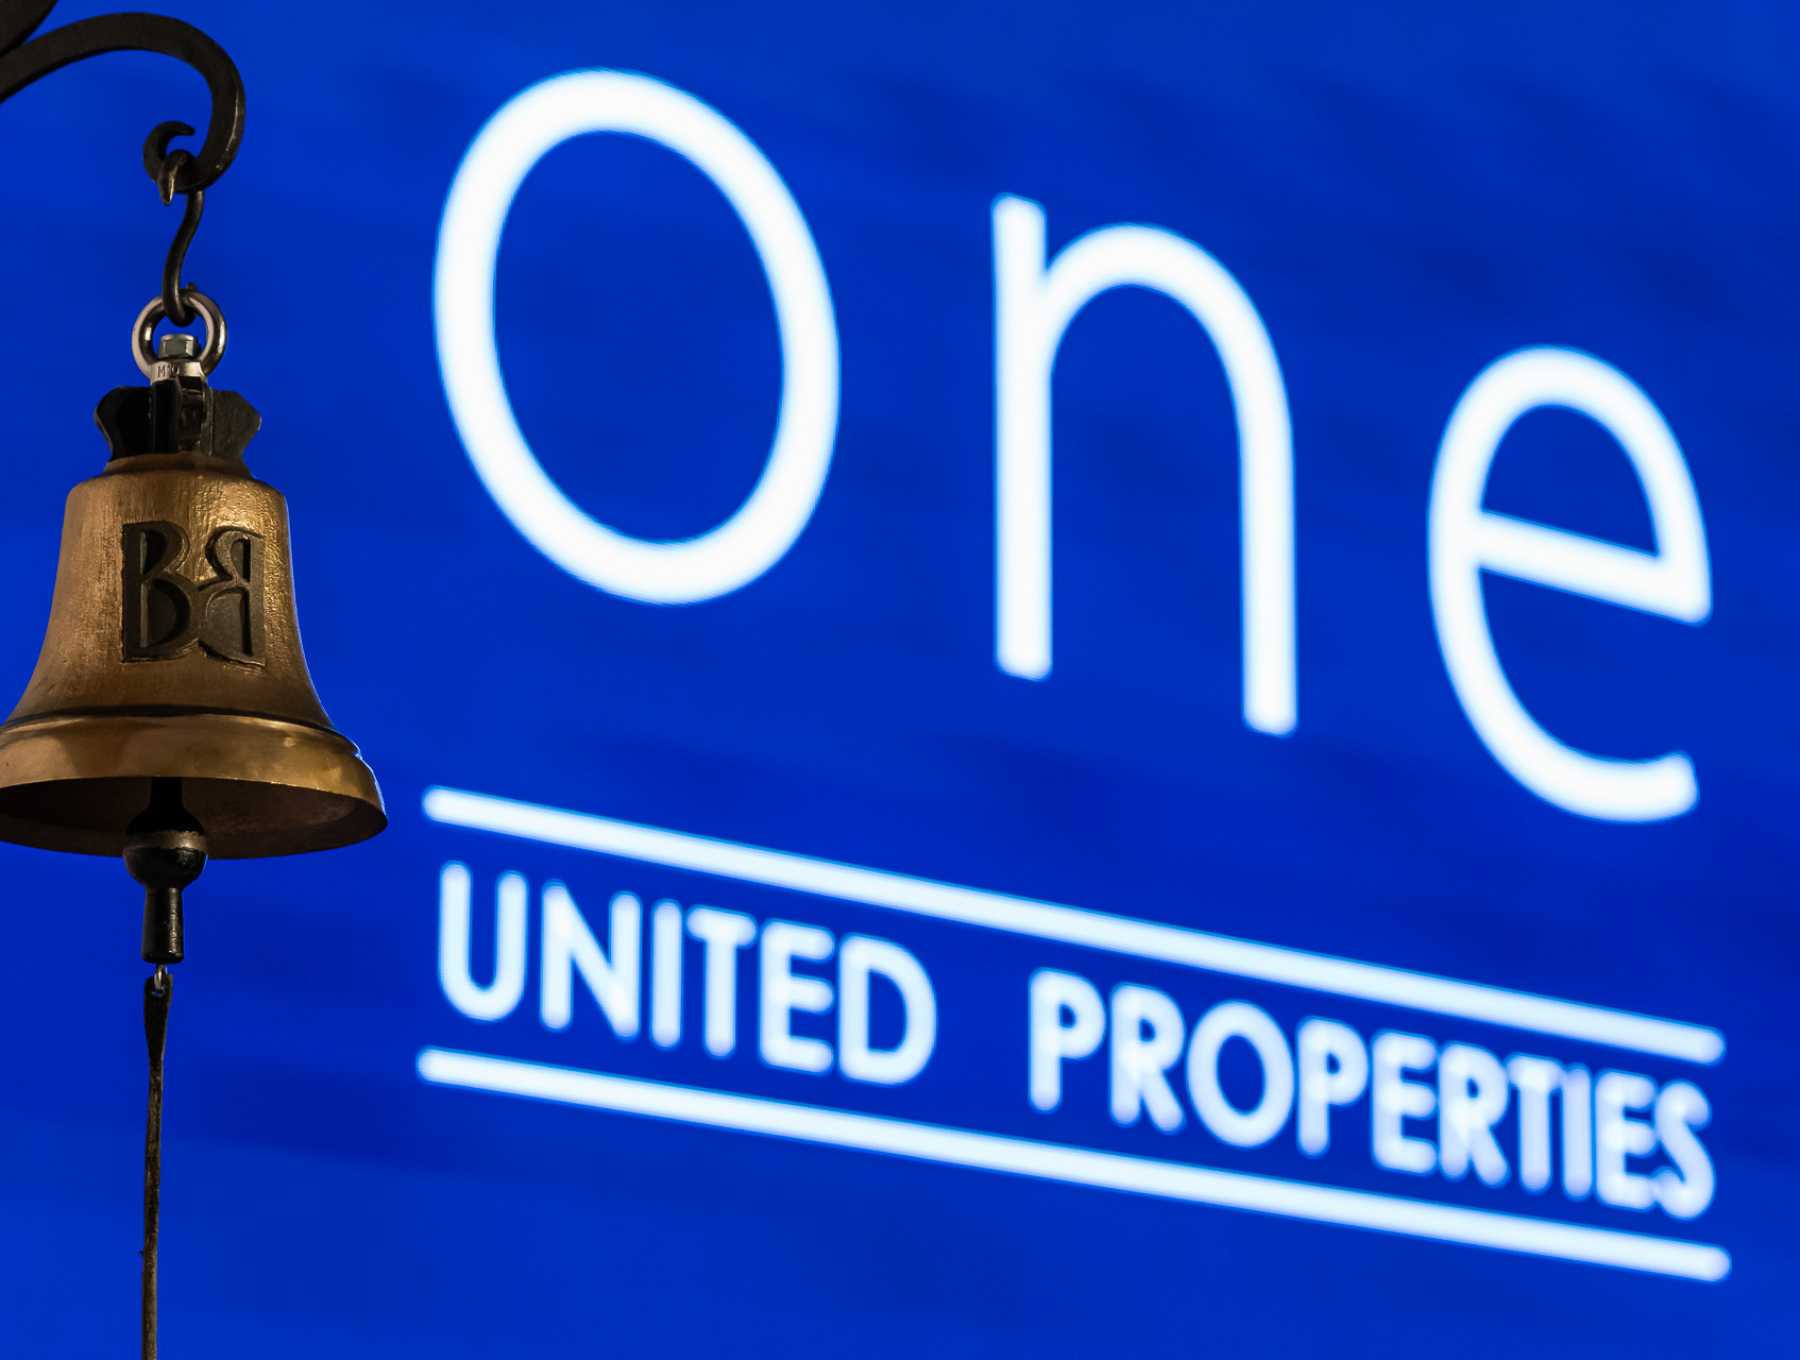 One United Properties închide prima etapă a operațiunii de majorare a capitalului social cu 71 milioane de lei atrași de la acționarii existenți